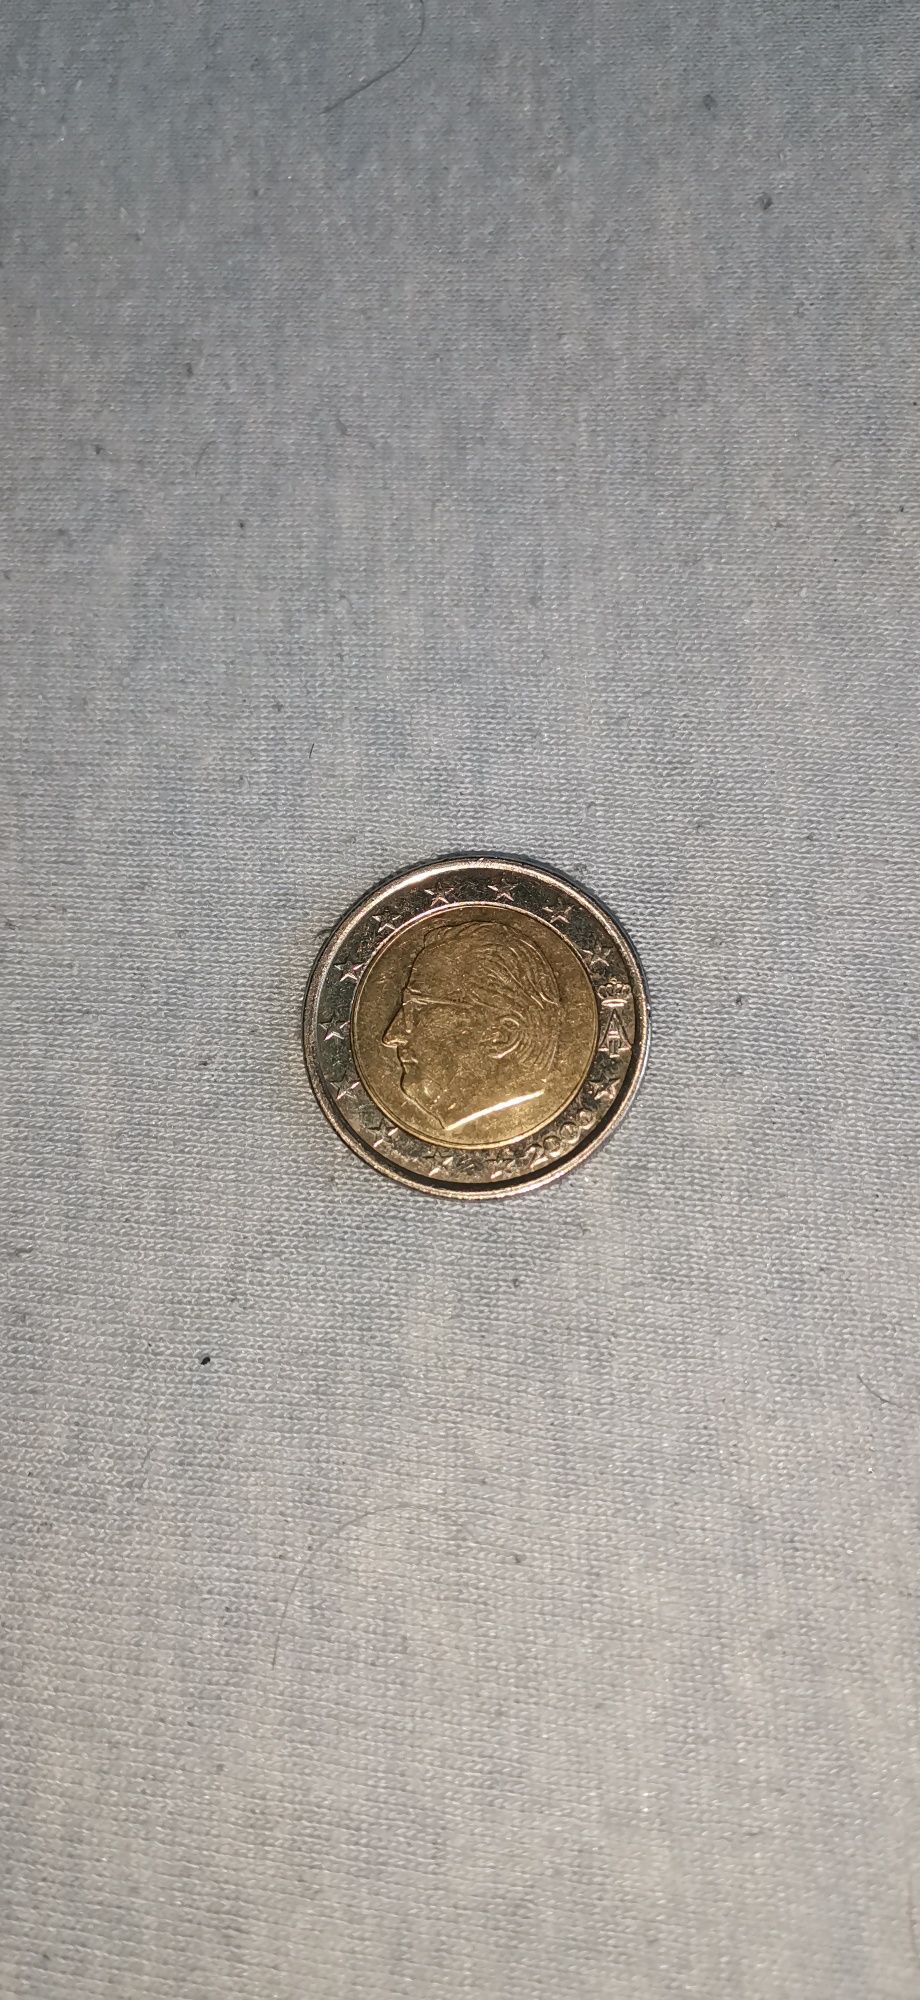 2 редки монети 2 евро